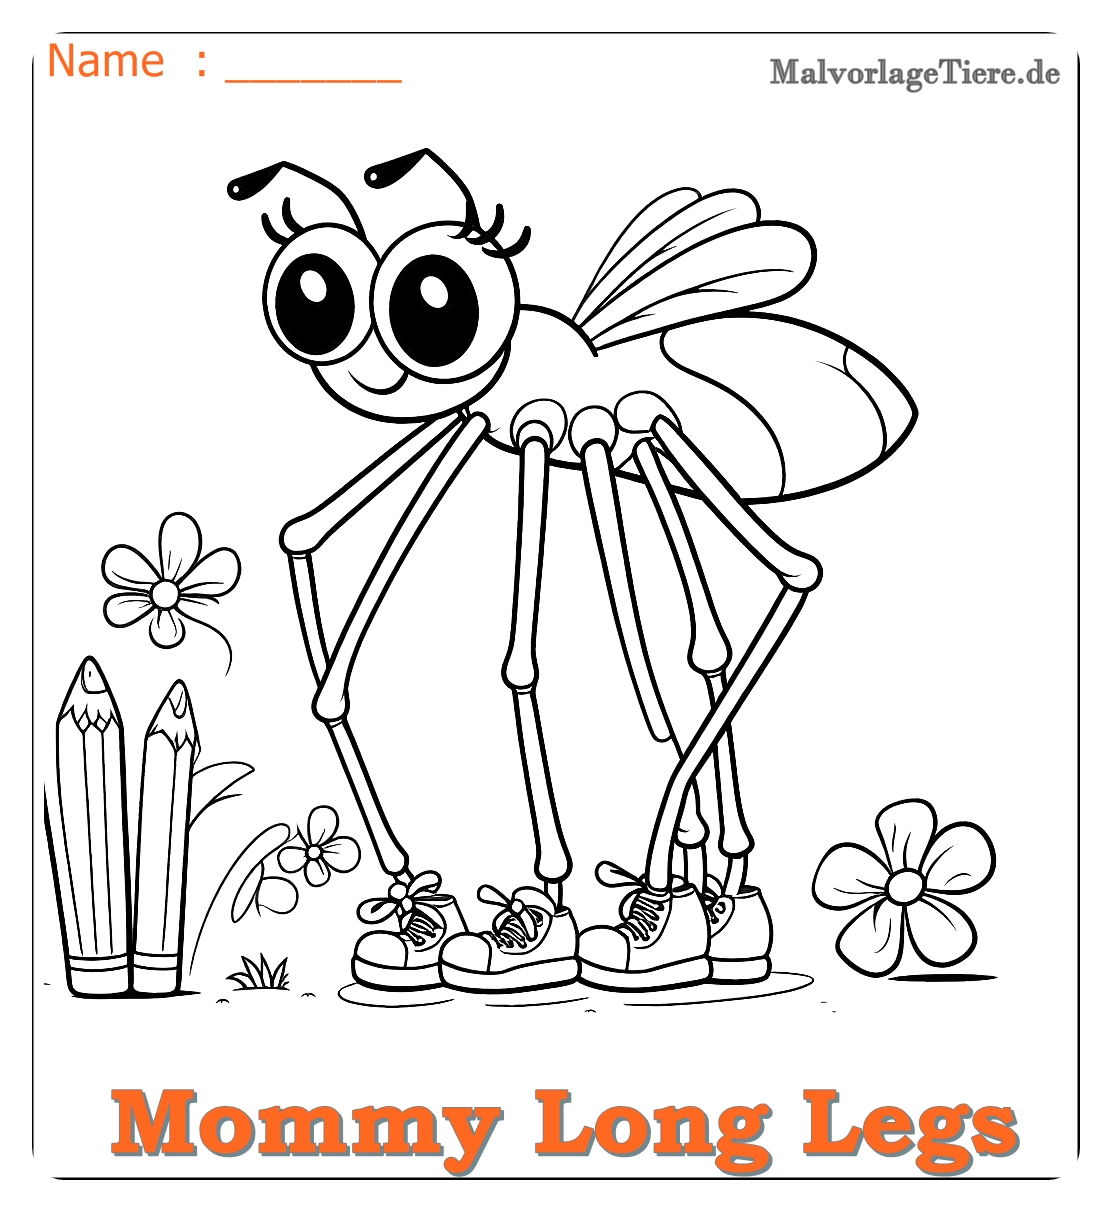 mommy long legs ausmalbilder 08 by malvorlagetiere.de